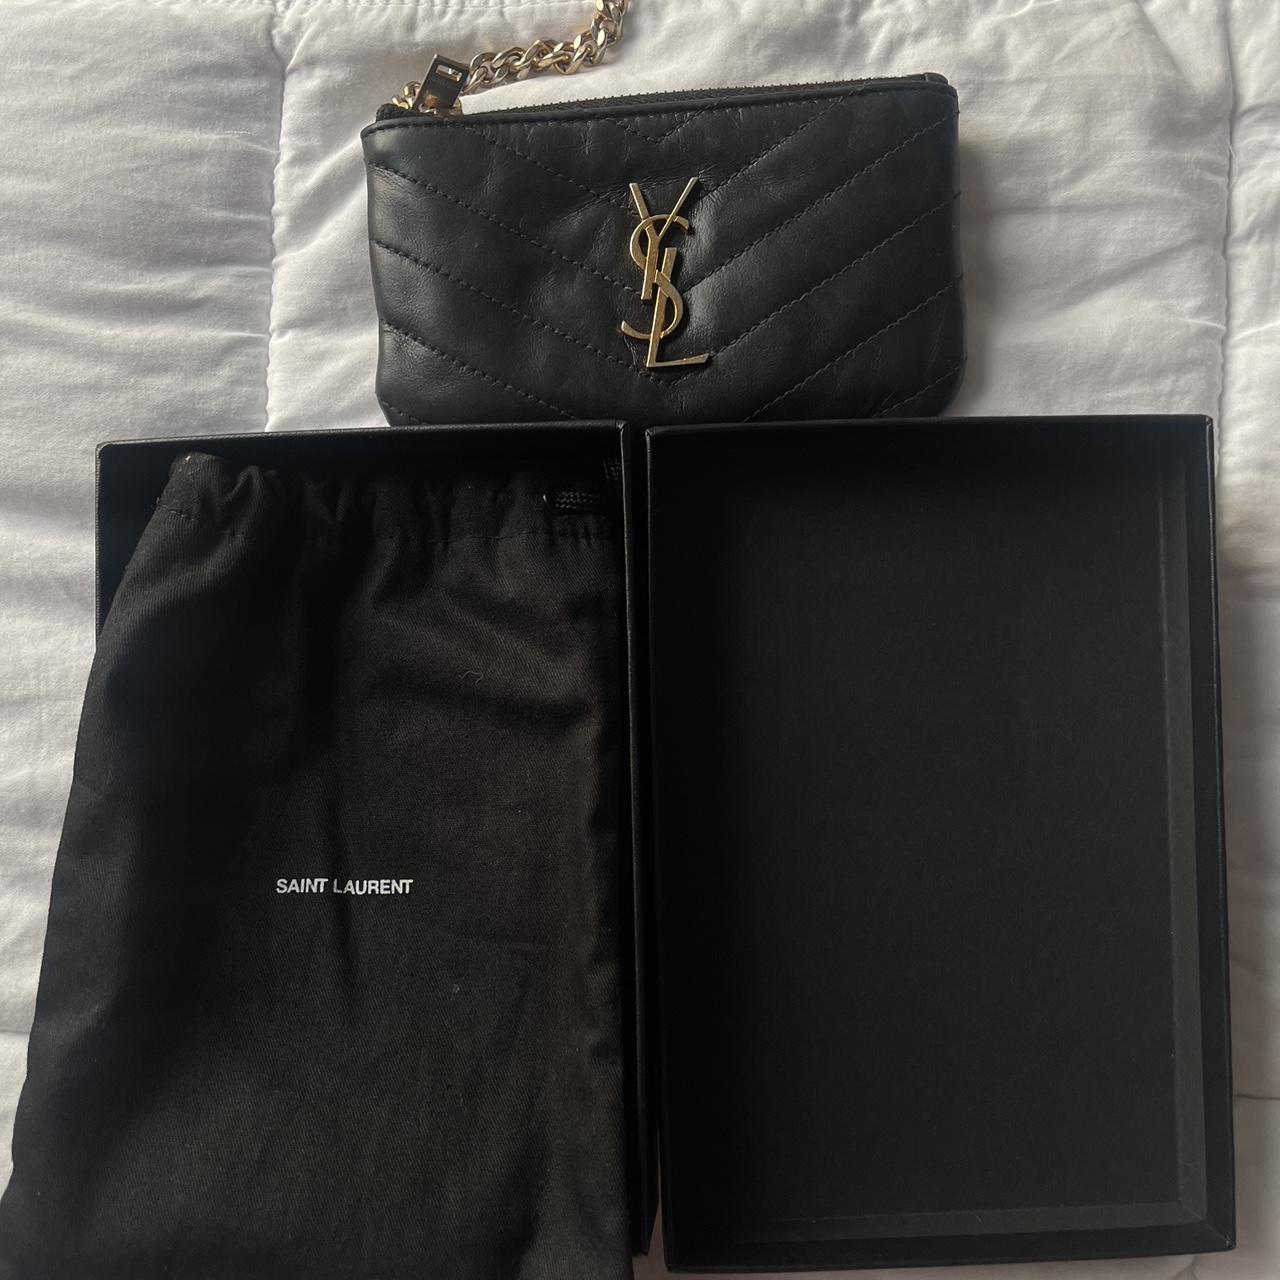 CASSANDRE MATELASSÉ key pouch in smooth leather, Saint Laurent